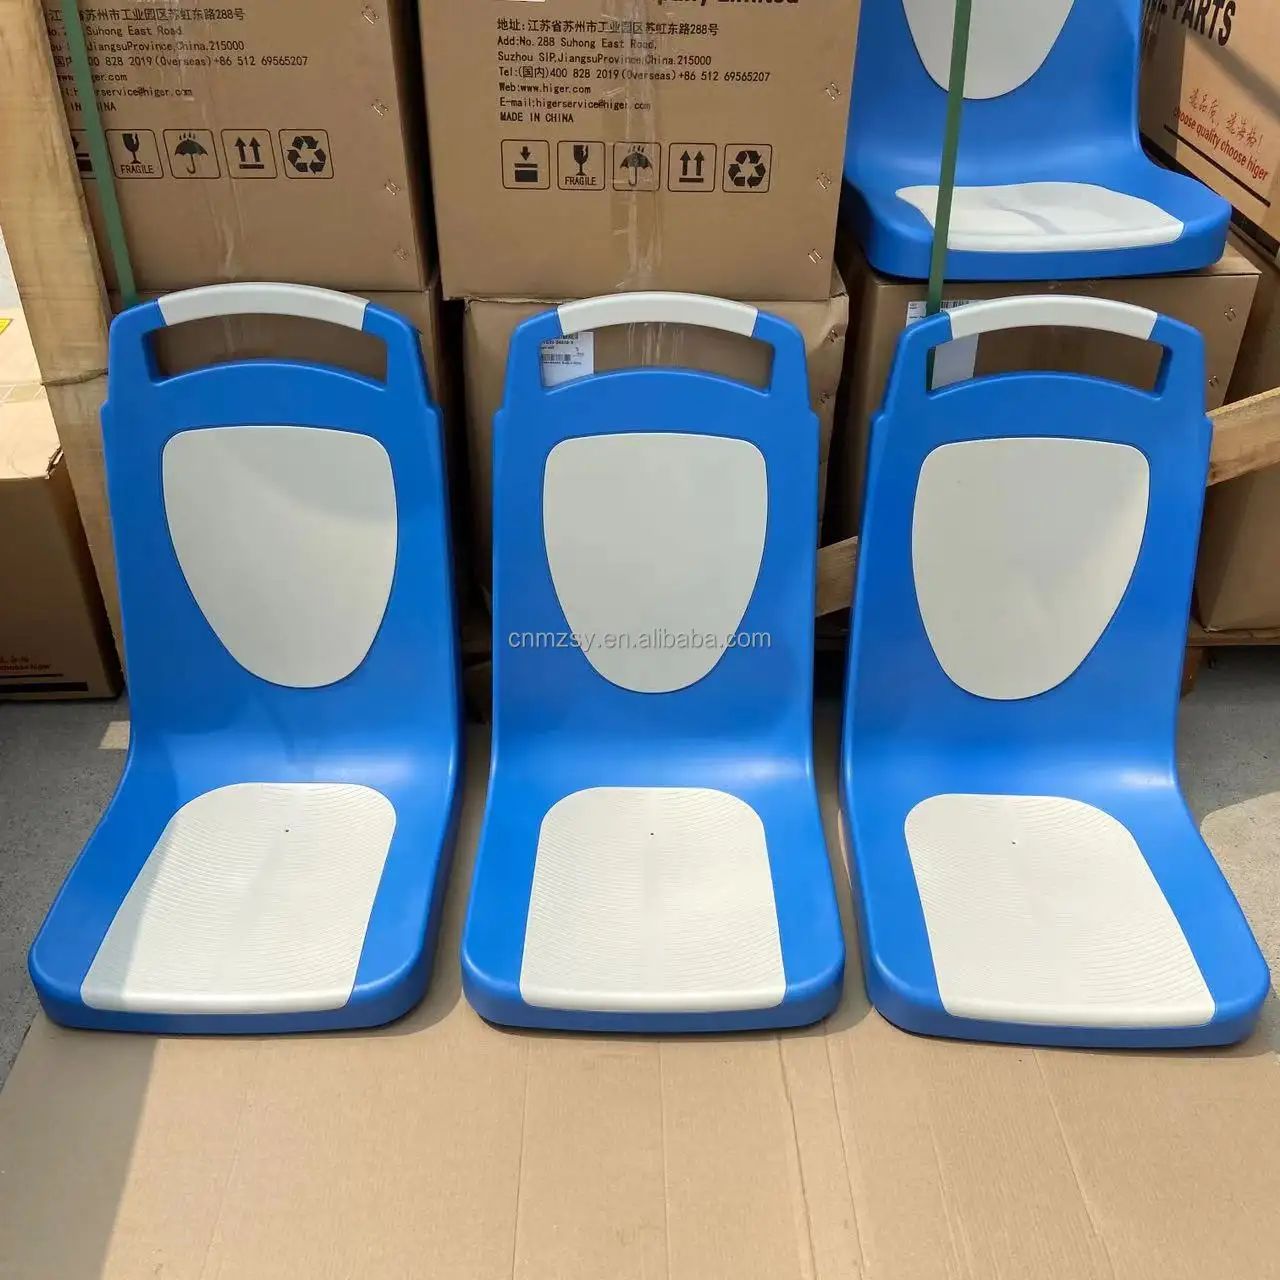 Hot Verkoop Stadsbus Plastic Passagiersstoelen Voor Higer Bussen